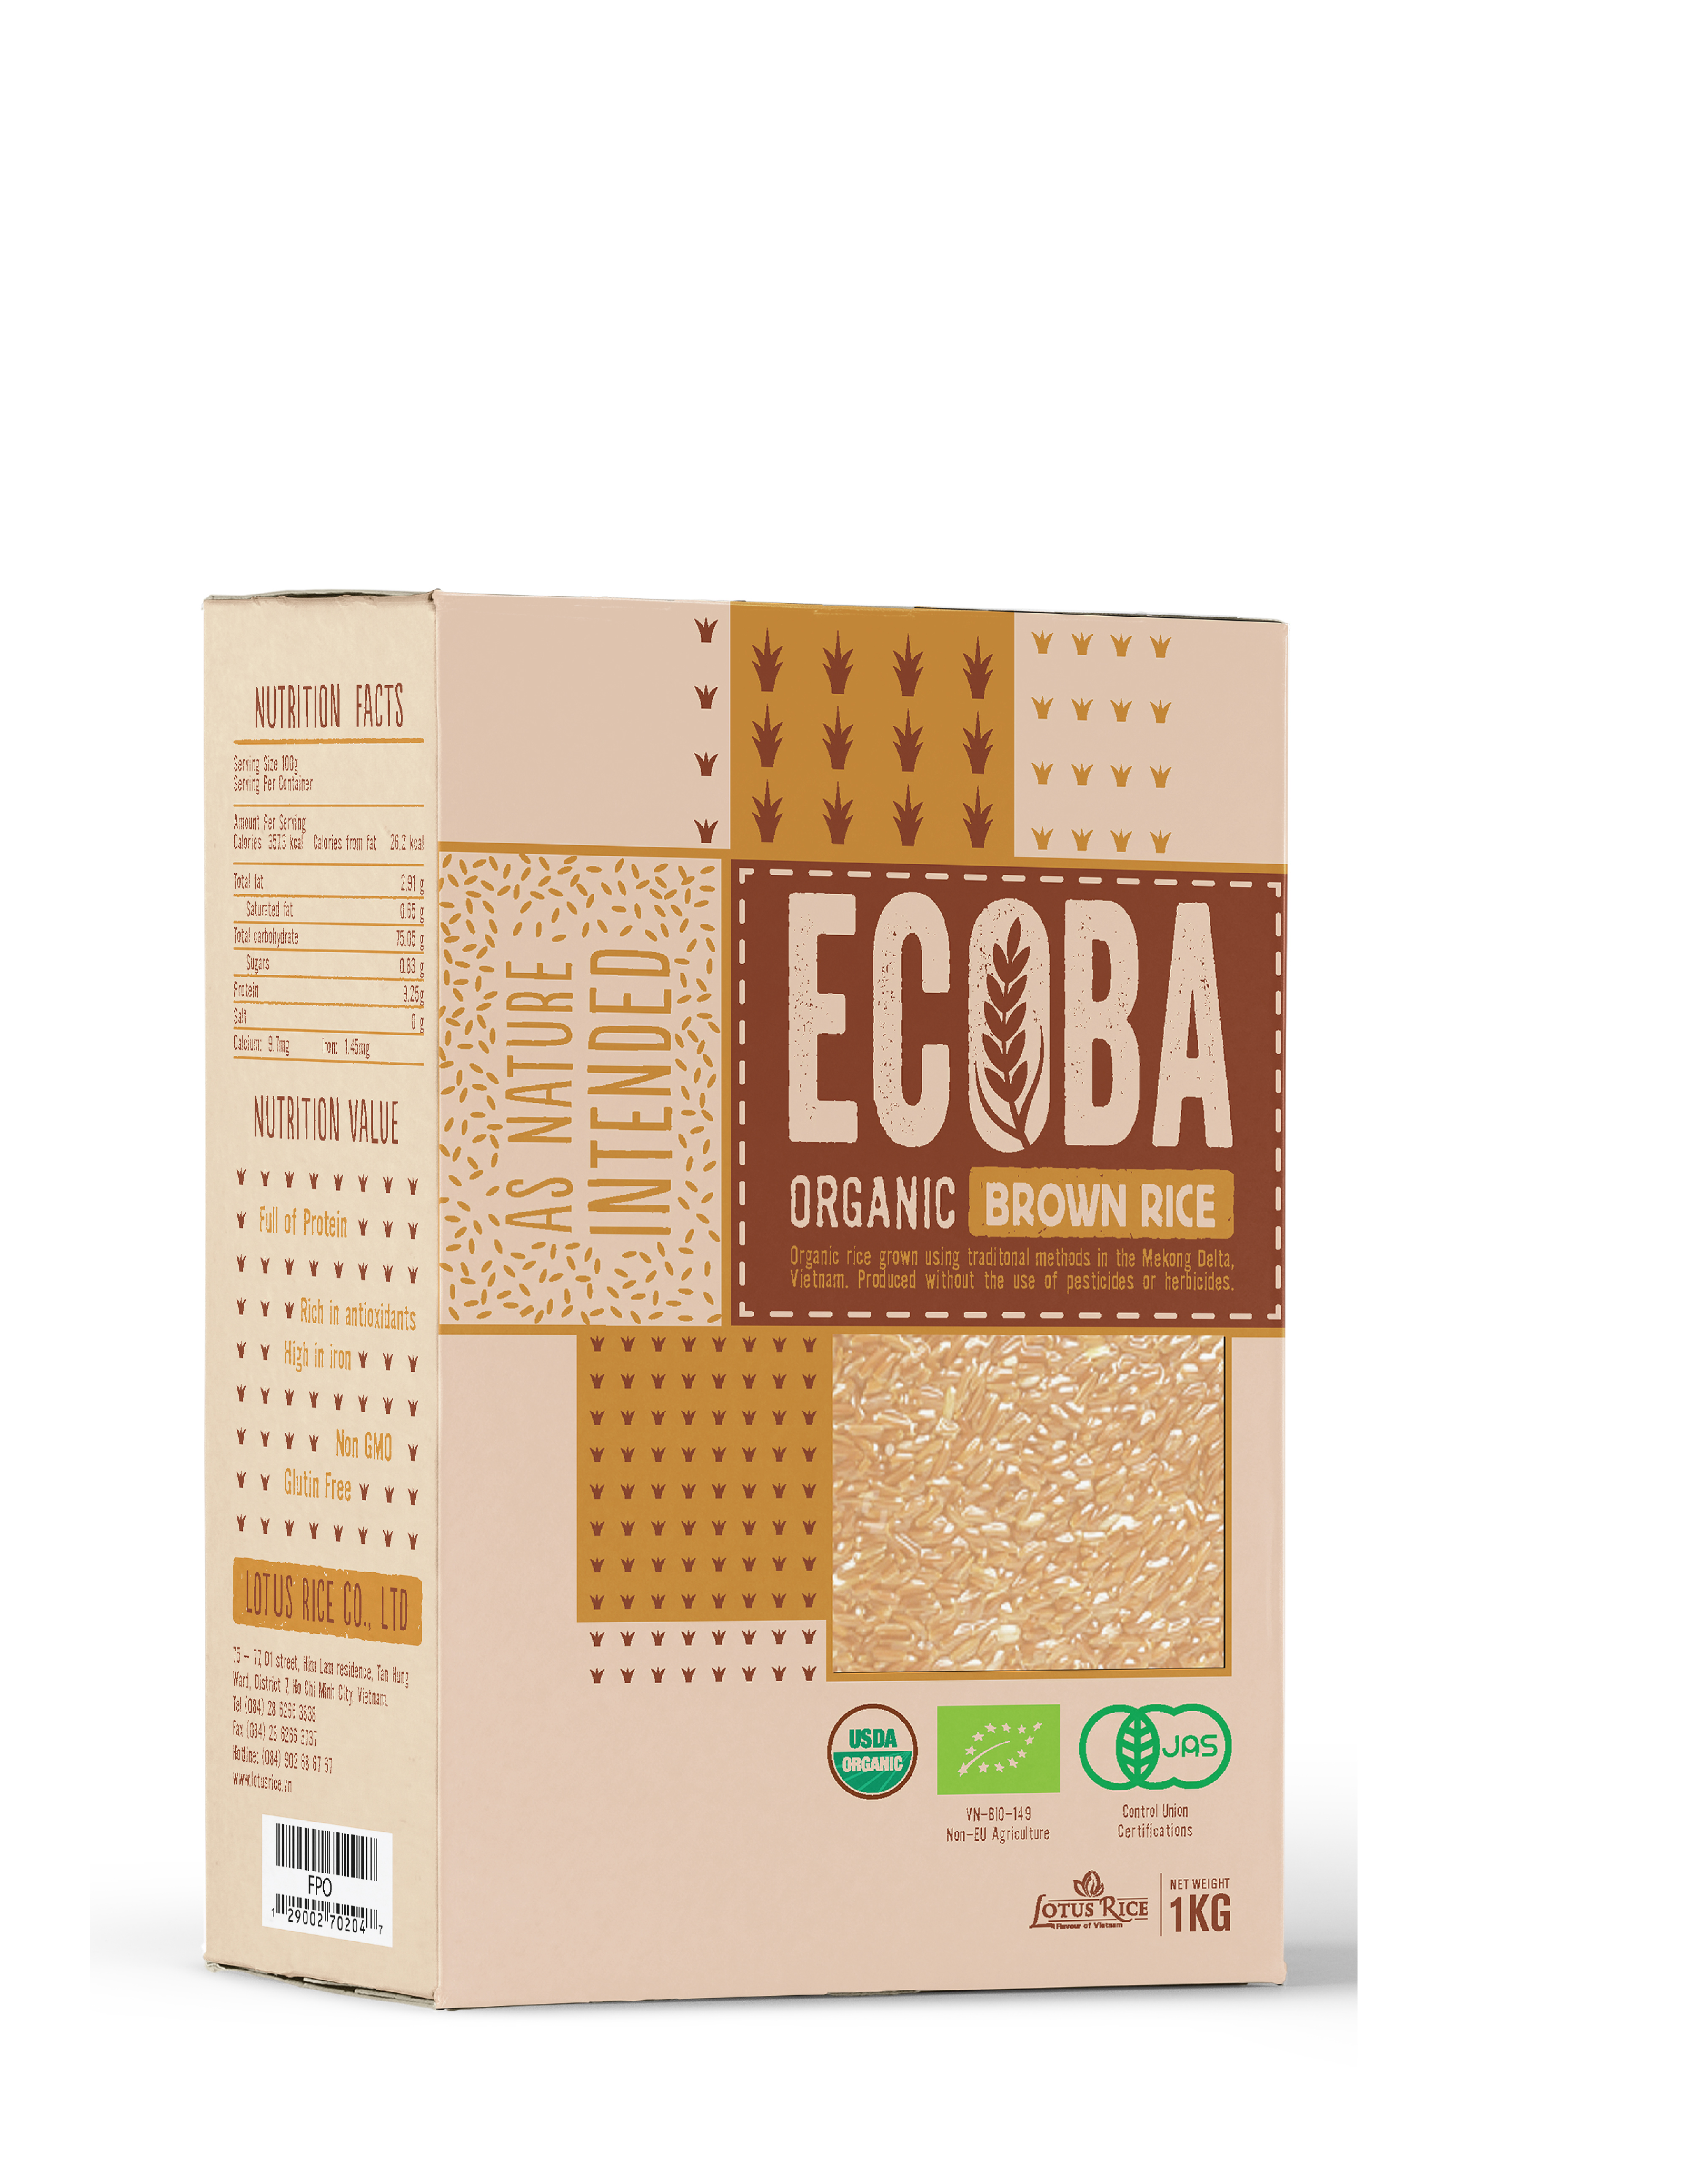 ECOBA - Organic Brown Rice